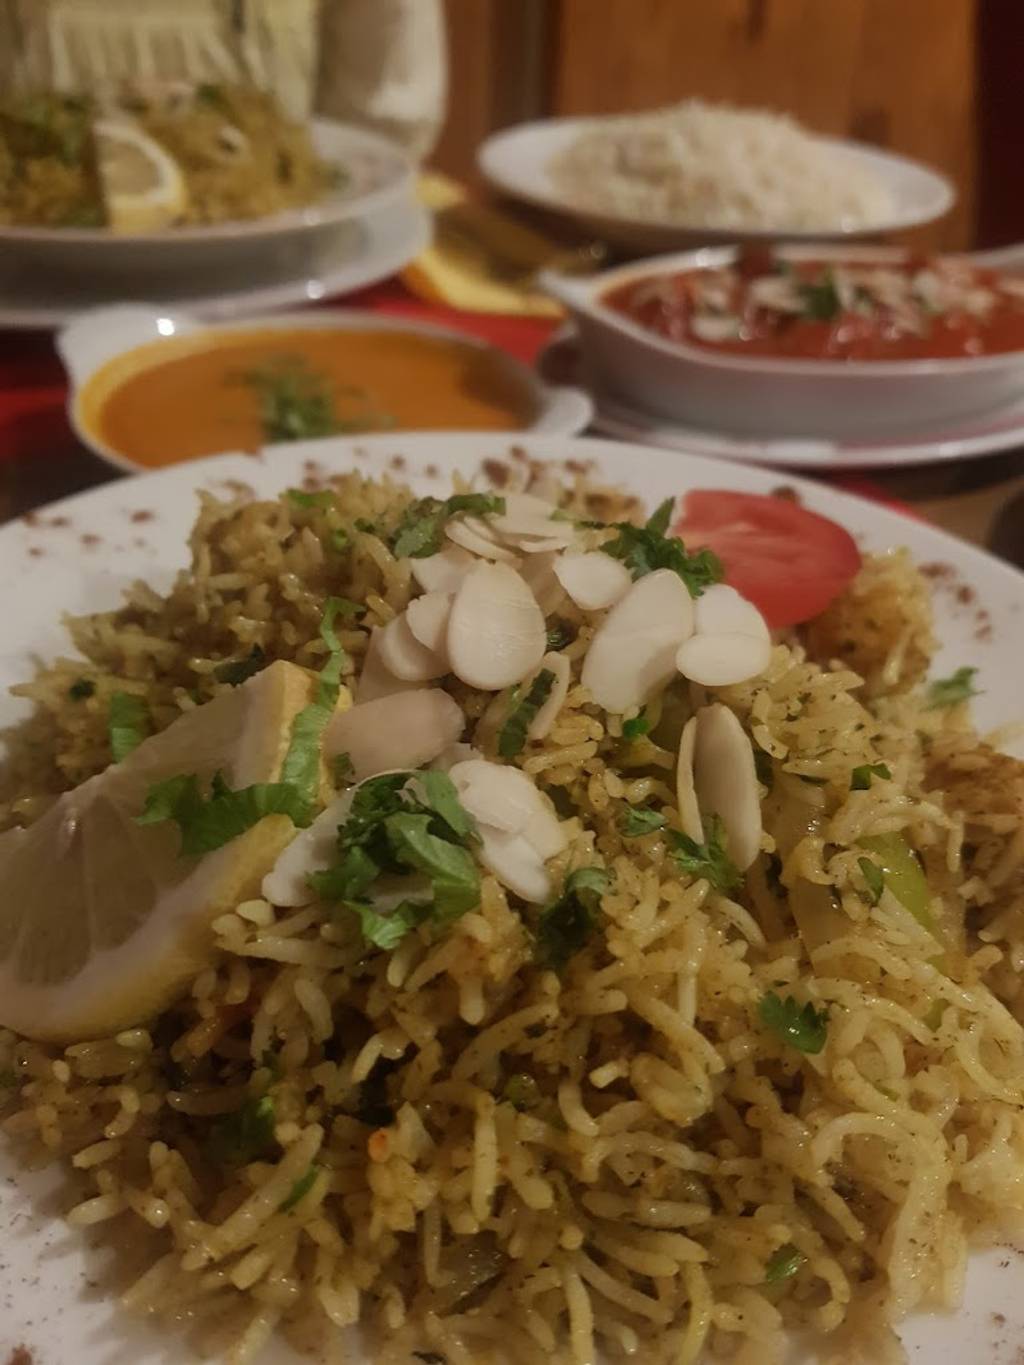 Délices de L'Inde Mulhouse - Food Tableware Plate Staple food Rice noodles